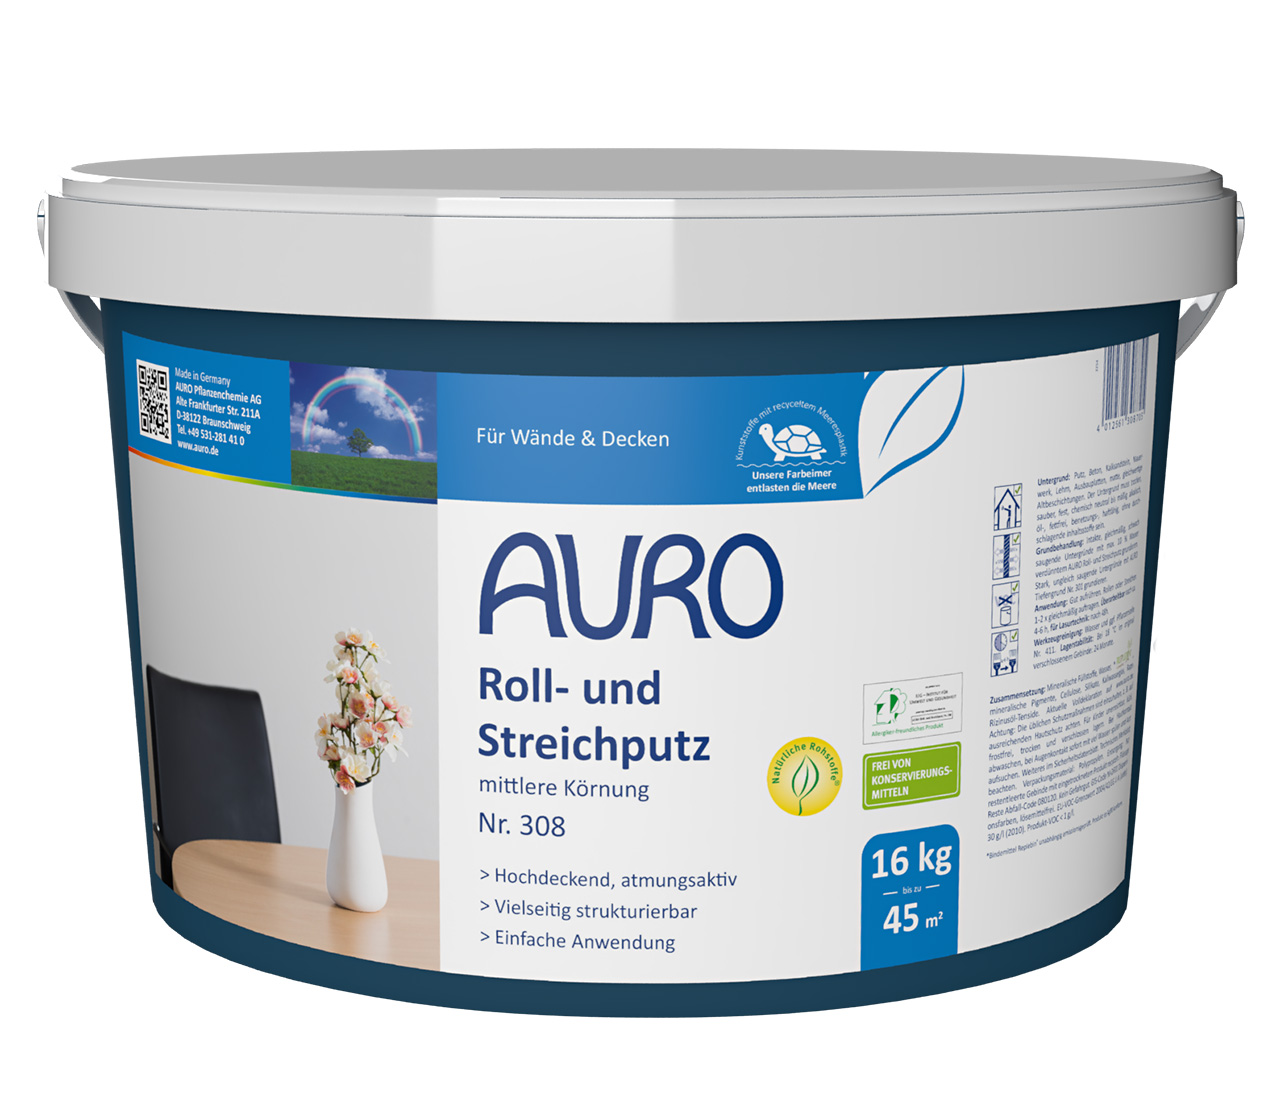 AURO Roll- und Streichputz mittlere Körnung 308 - 16 kg